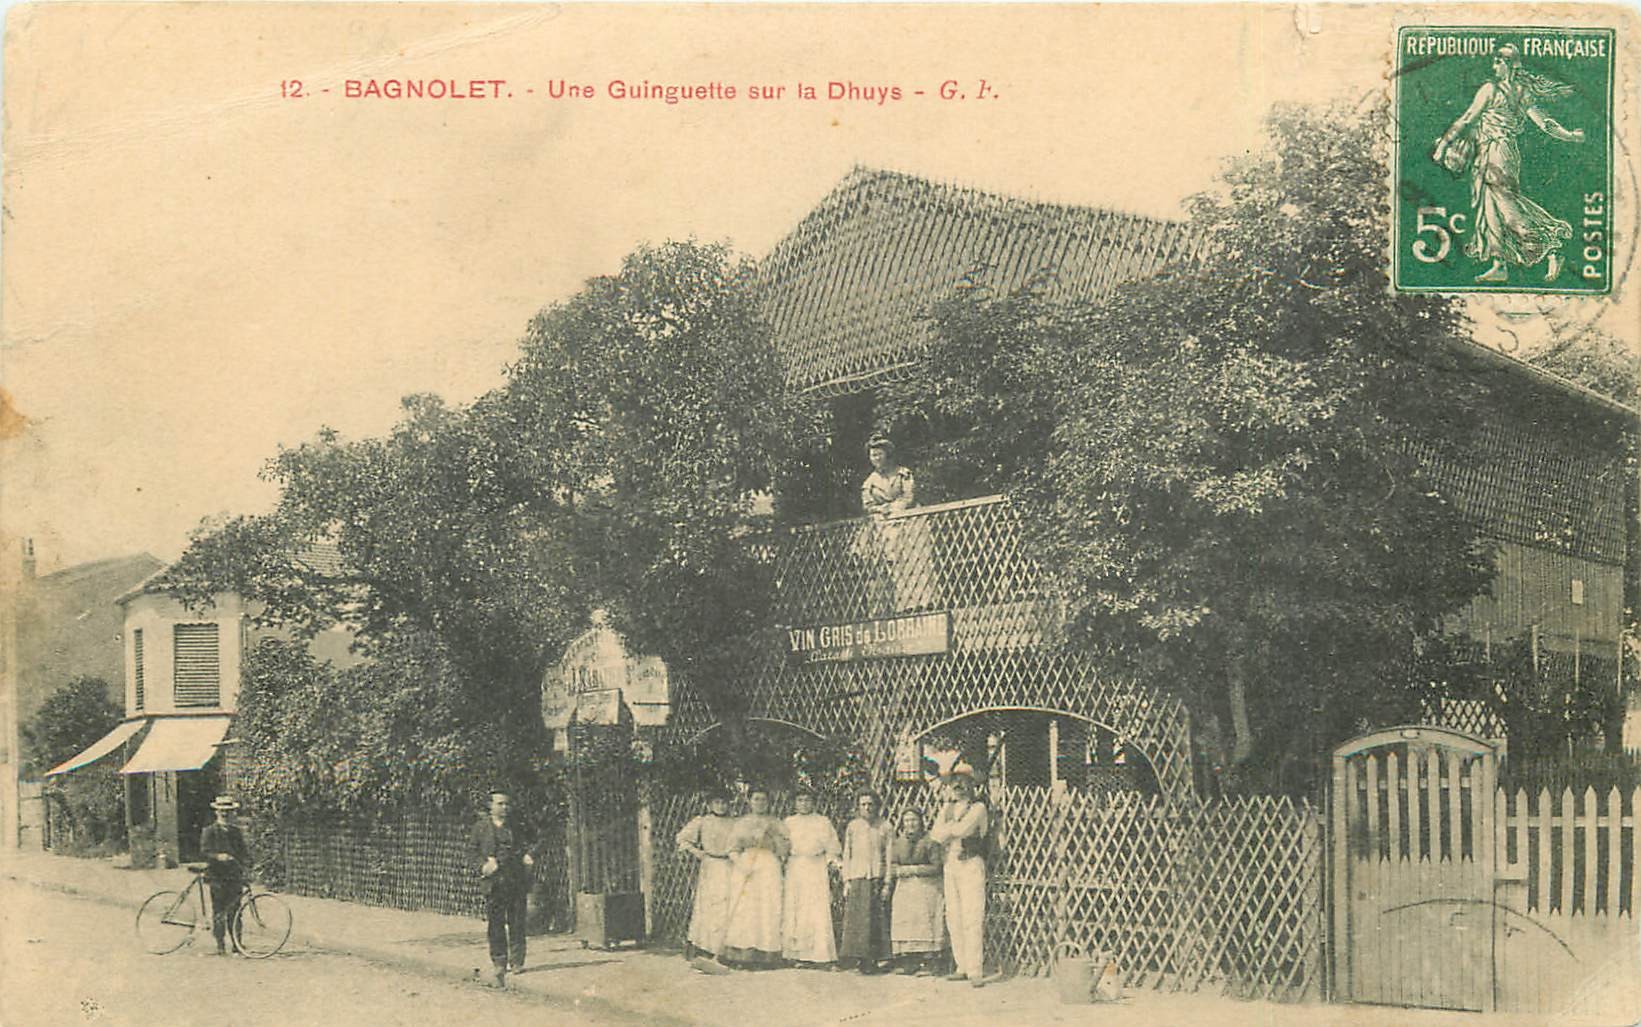 93 BAGNOLET. Une Guinguette sur la Dhuys et son personnel 1913